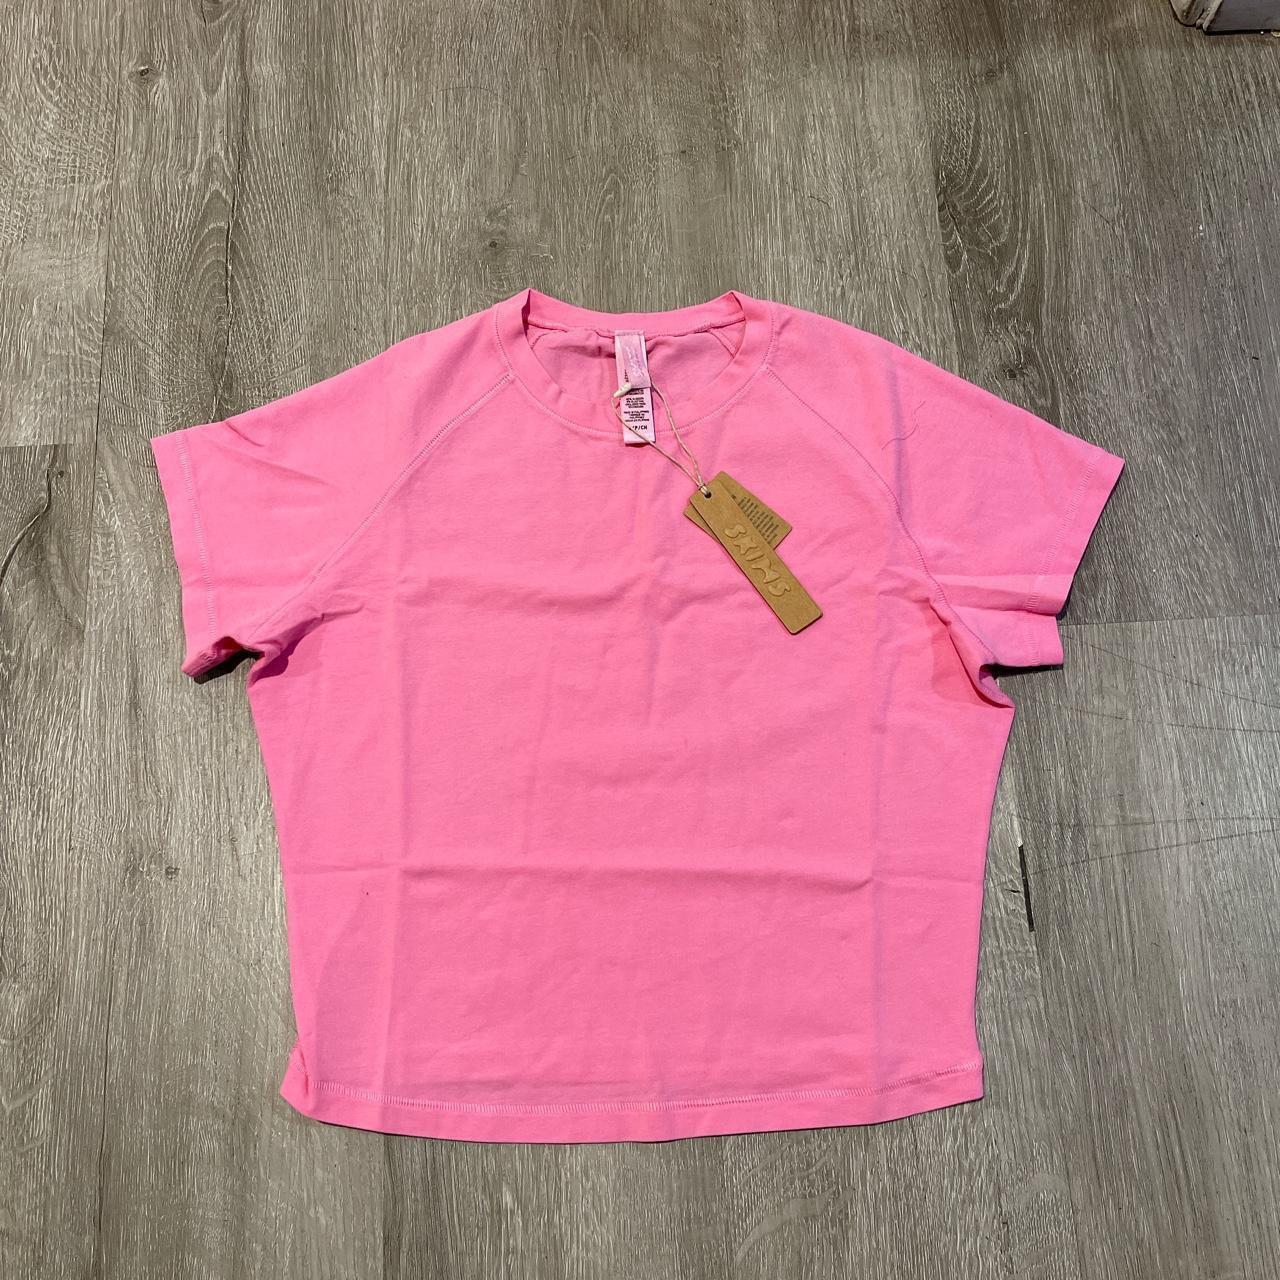 Skims Women's Pink T-shirt | Depop